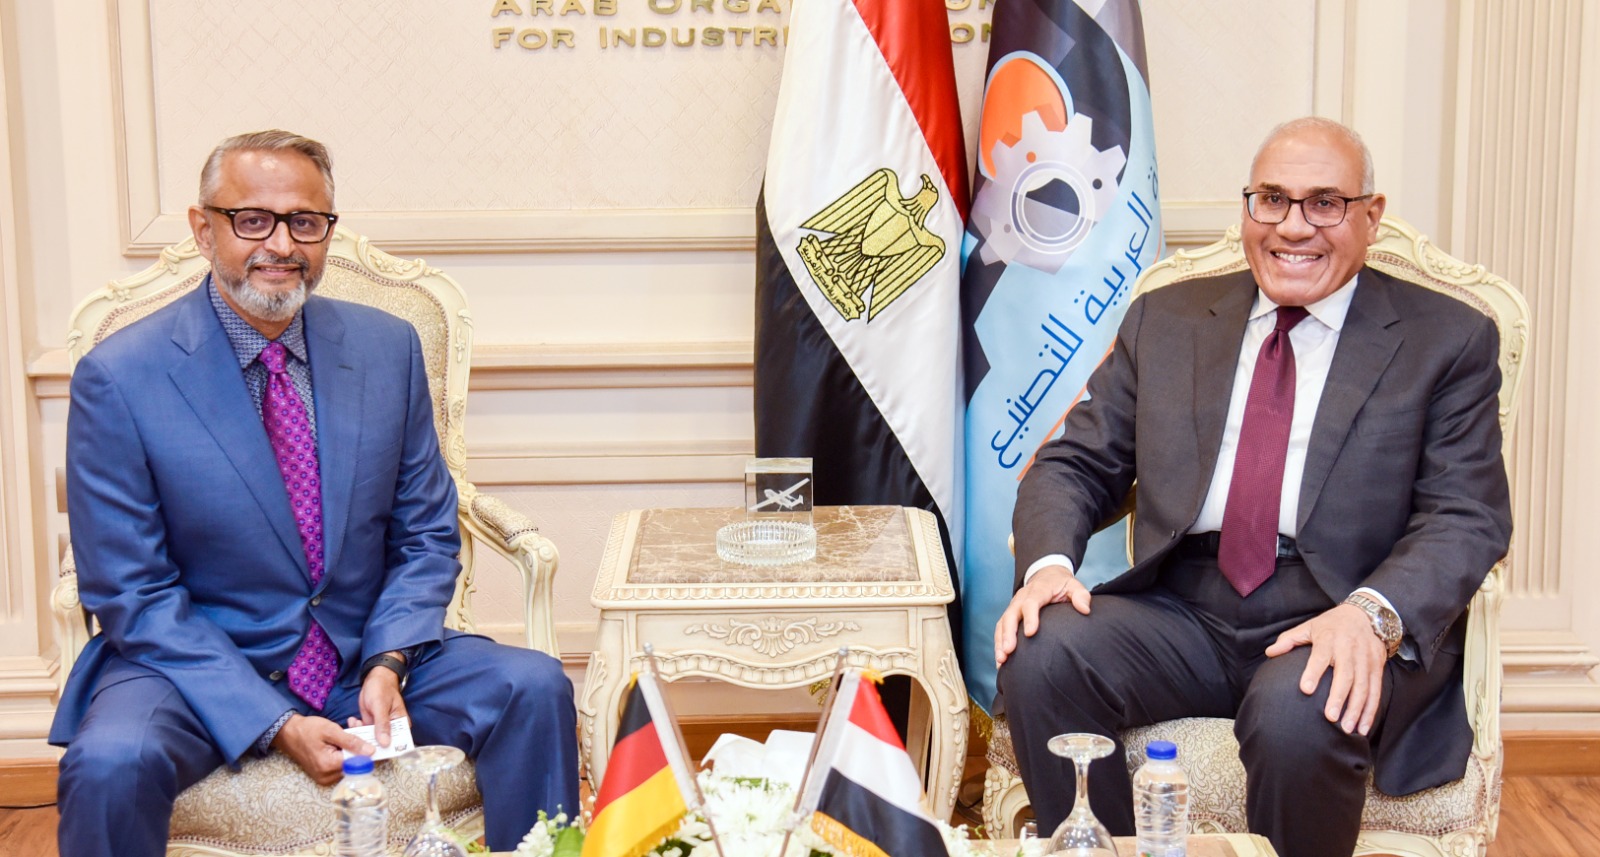 رئيس الهيئة العربية للتصنيع يستقبل رئيس مجلس إدارة شركة دي إم جي موري العالمية ومباحثات ناجحة لتعزيز التعاون والشراكات